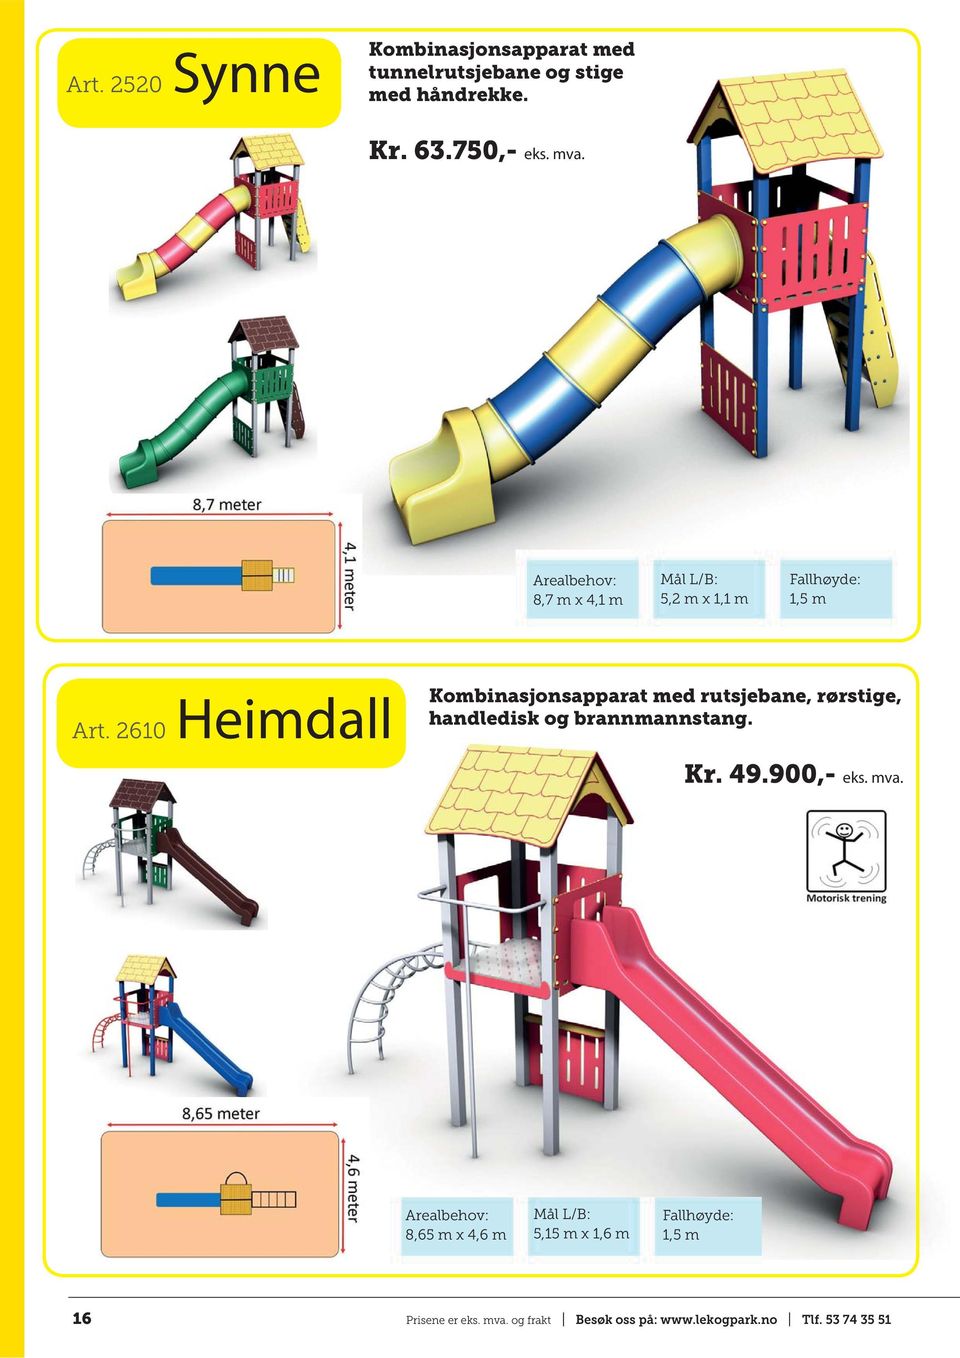 2610 Heimdall Kombinasjonsapparat med rutsjebane, rørstige, handledisk og